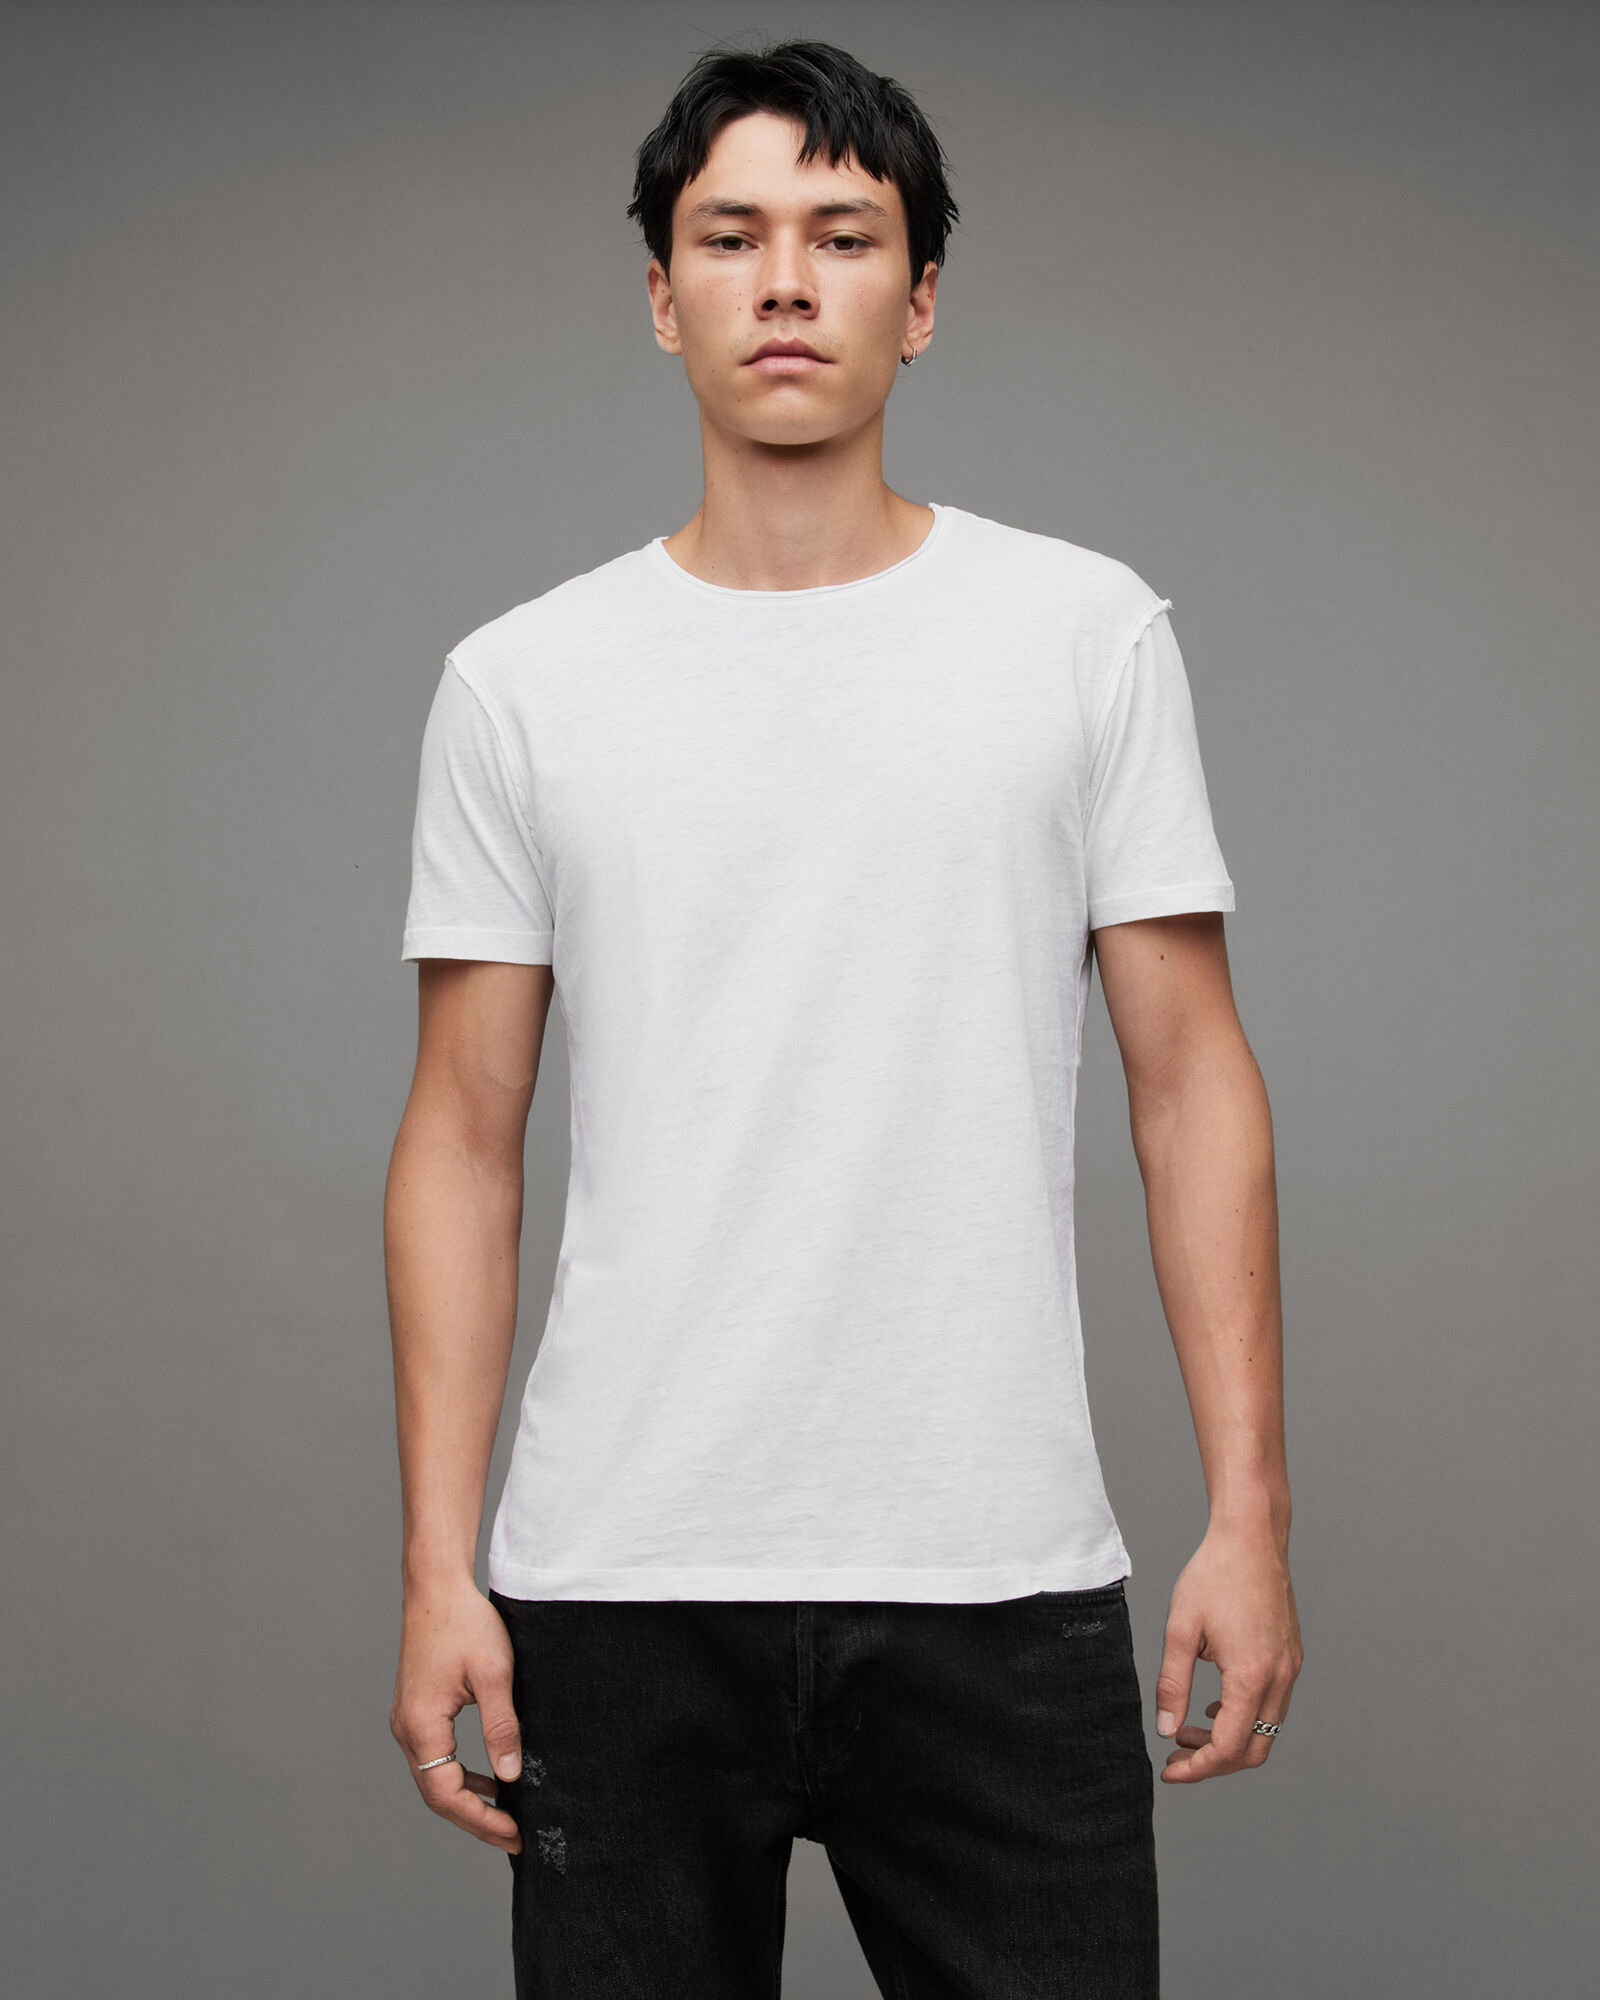 激安商品激安商品Ennoy 2Pack L S T-Shirts (BLACK) Lサイズ Tシャツ 